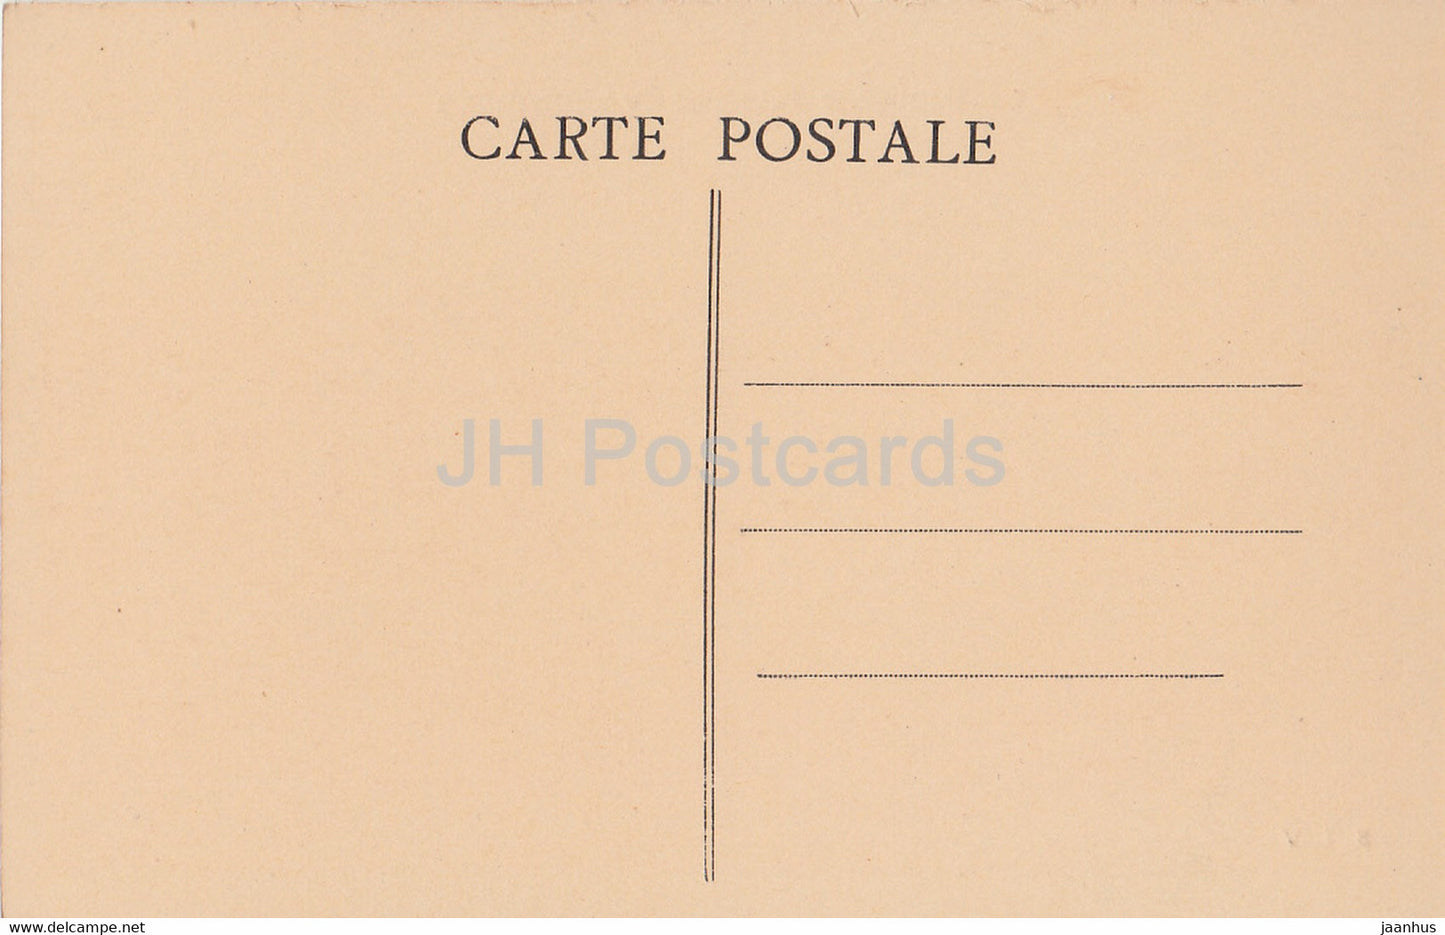 Varneville - Deutscher Friedhof - Friedhof - Militär - Erster Weltkrieg - 192 - alte Postkarte - Frankreich - unbenutzt